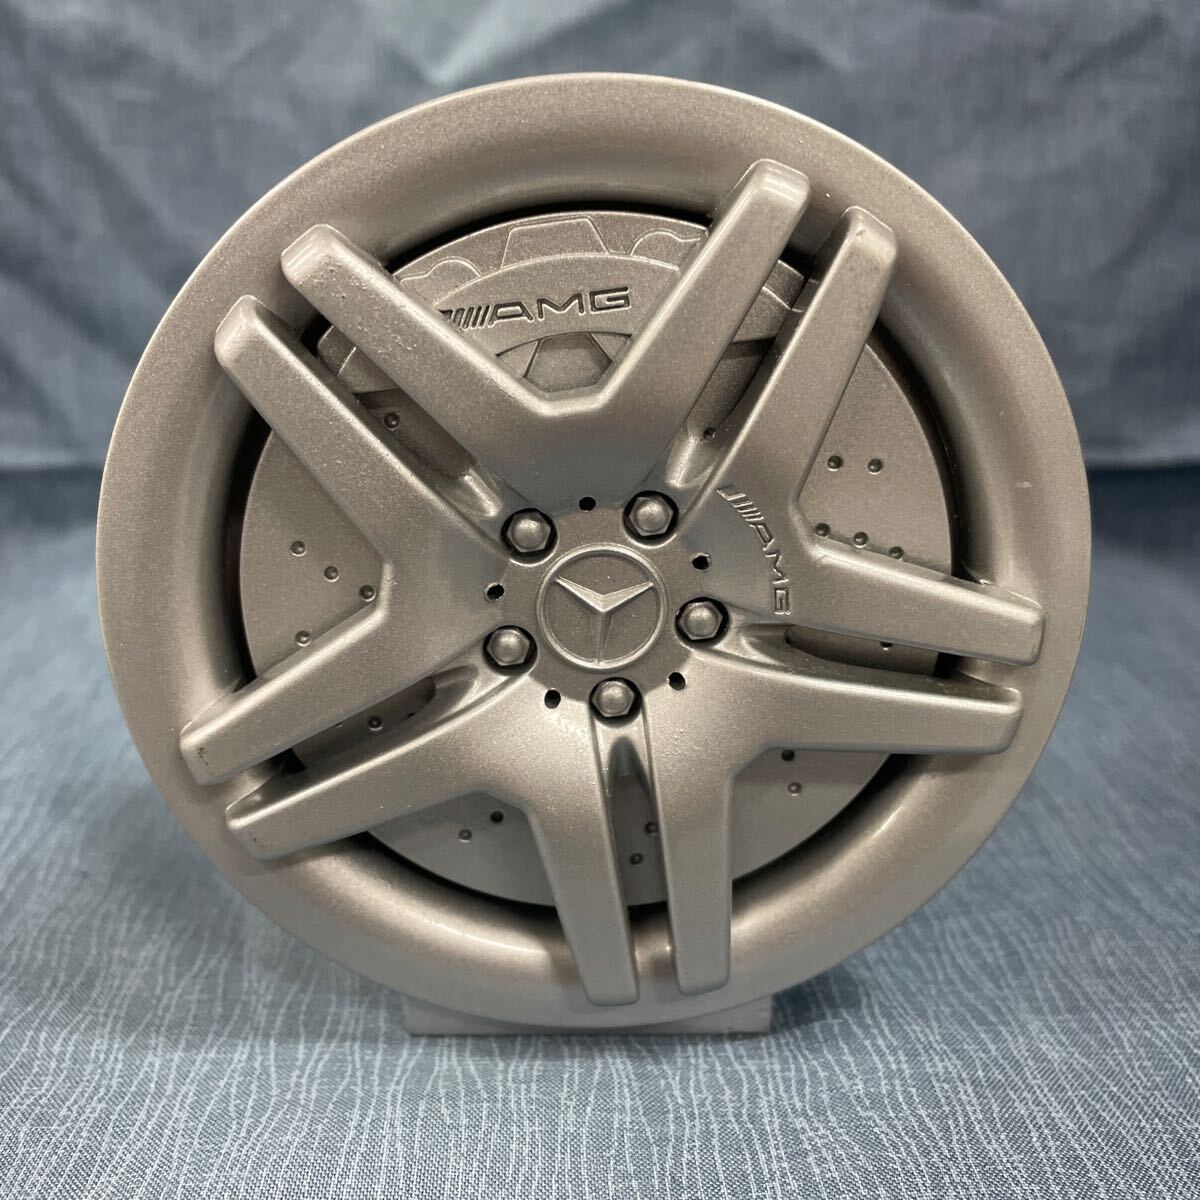  Mercedes Benz AMG колесо type стандартный товар украшение часы редкий стайлинг 4 колесо измерительный прибор дизайн 